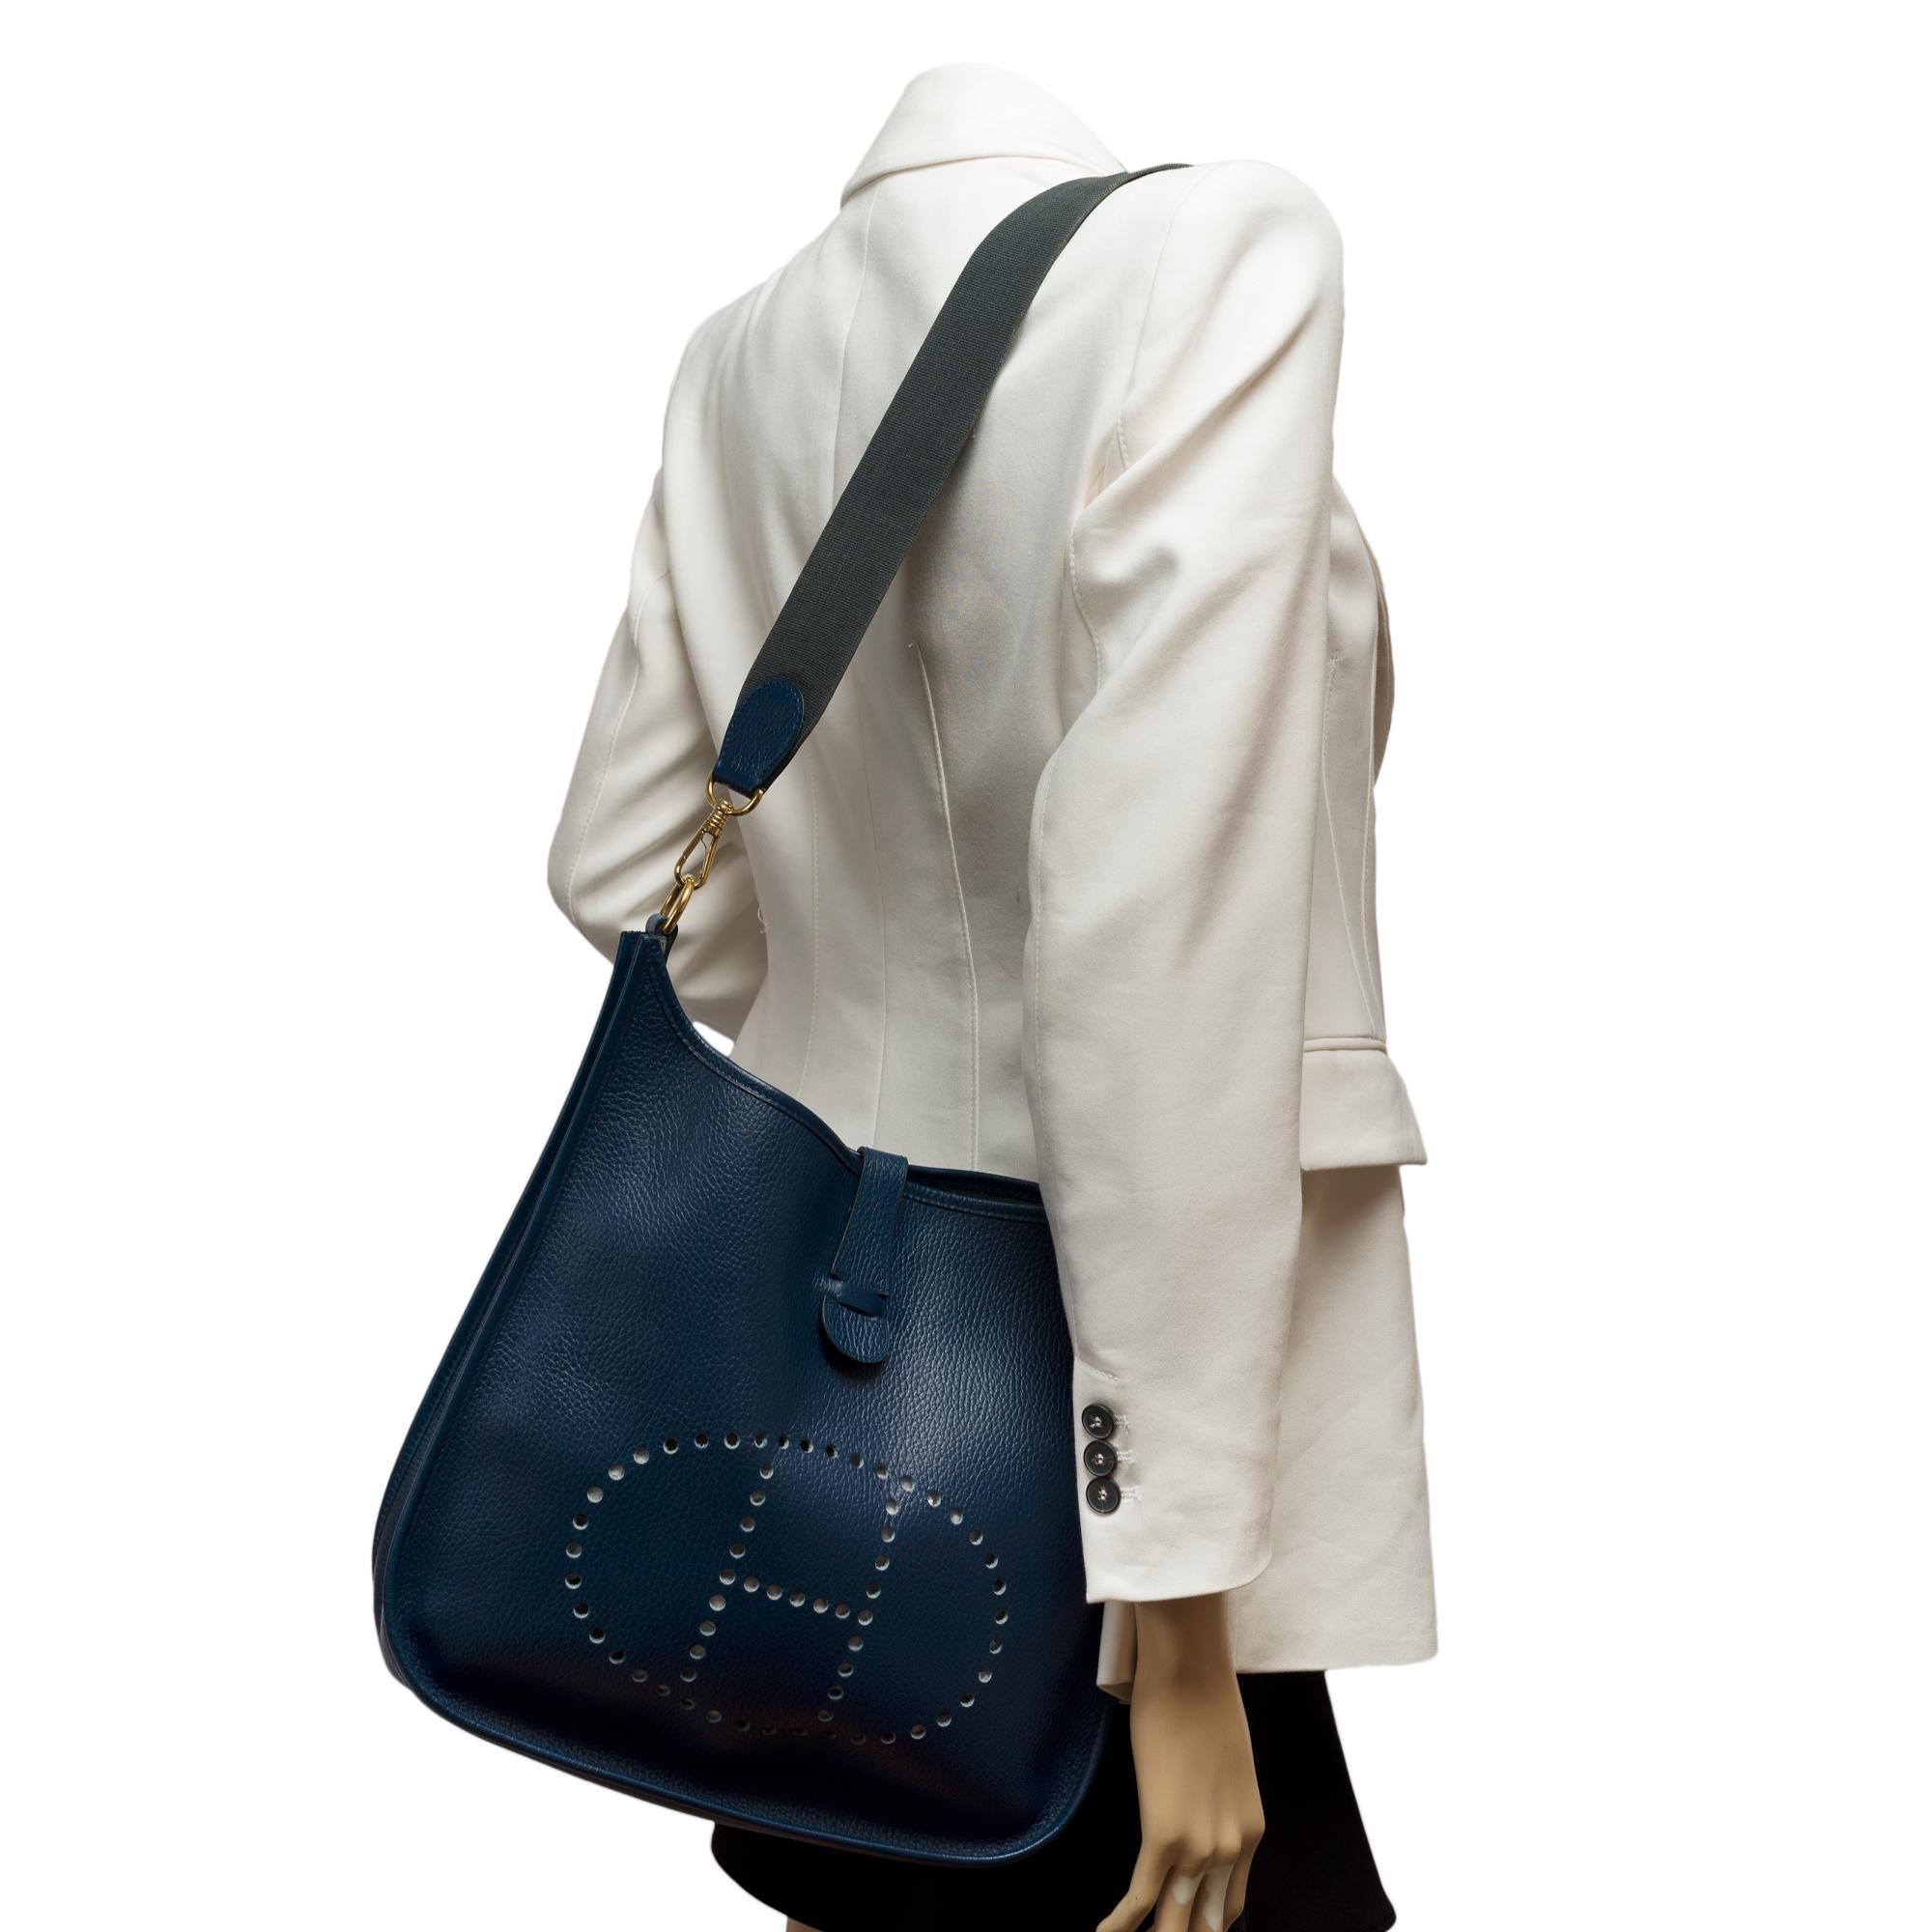 Hermès Evelyne GM  shoulder bag in Navy Blue Taurillon Clemence leather, GHW 9